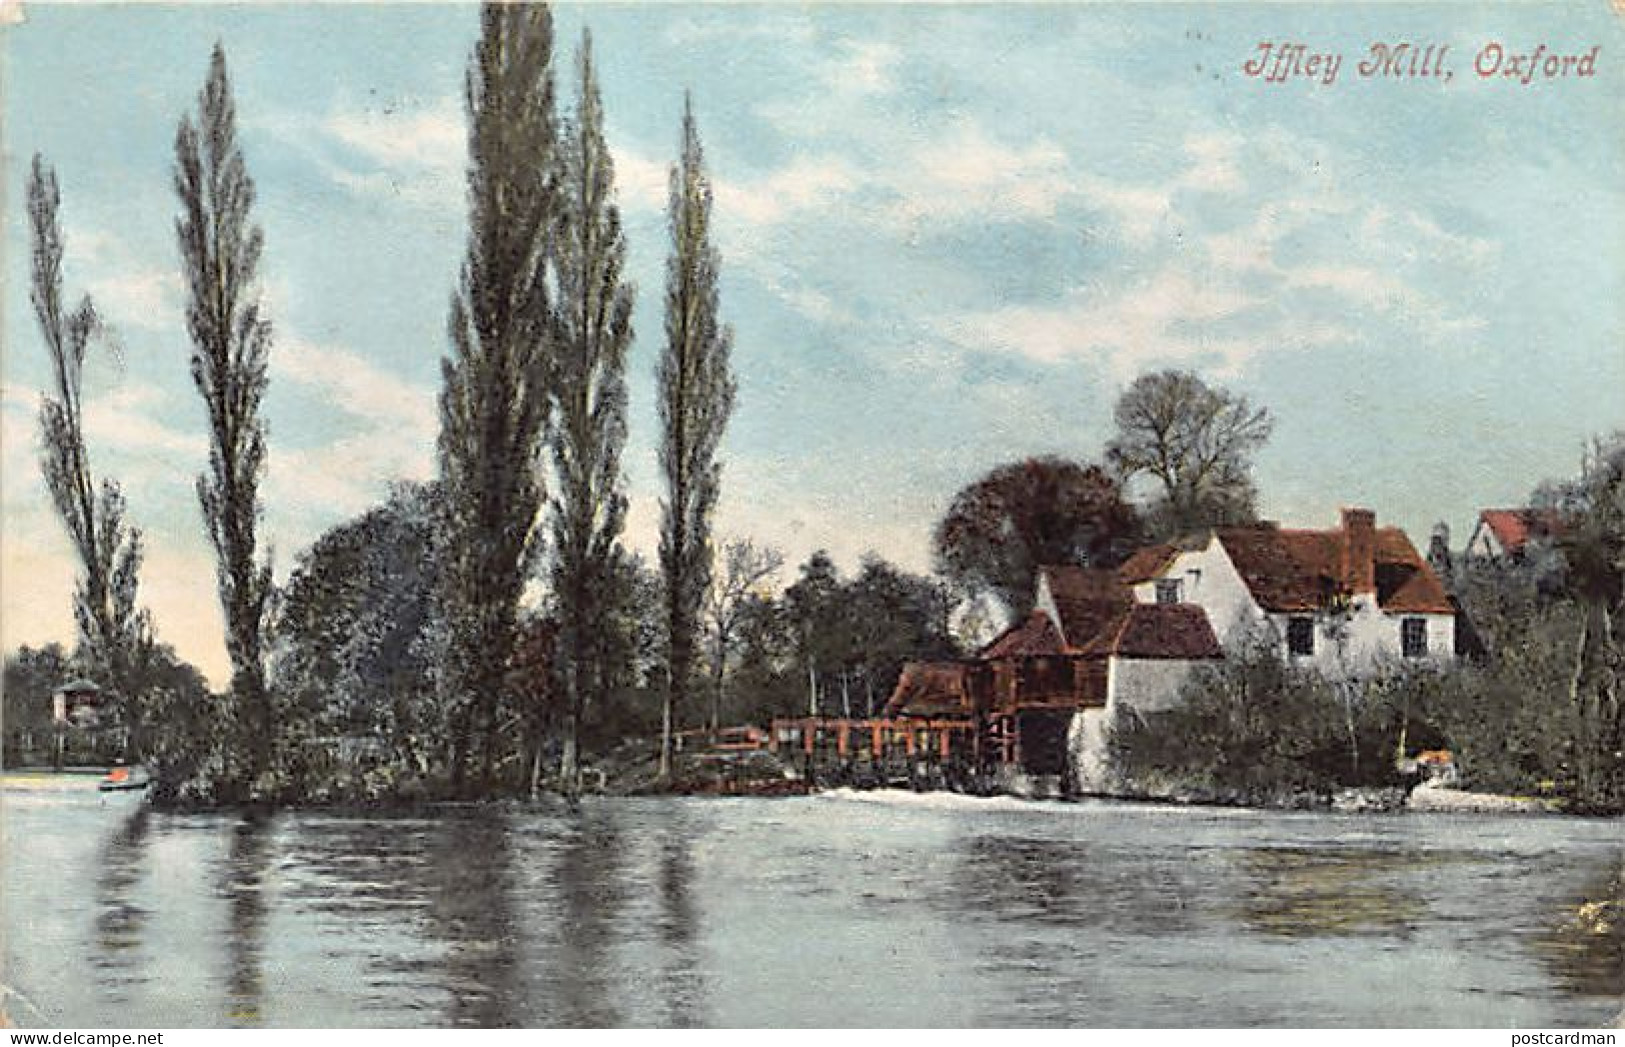 England - OXFORD Iffley Mill - Oxford